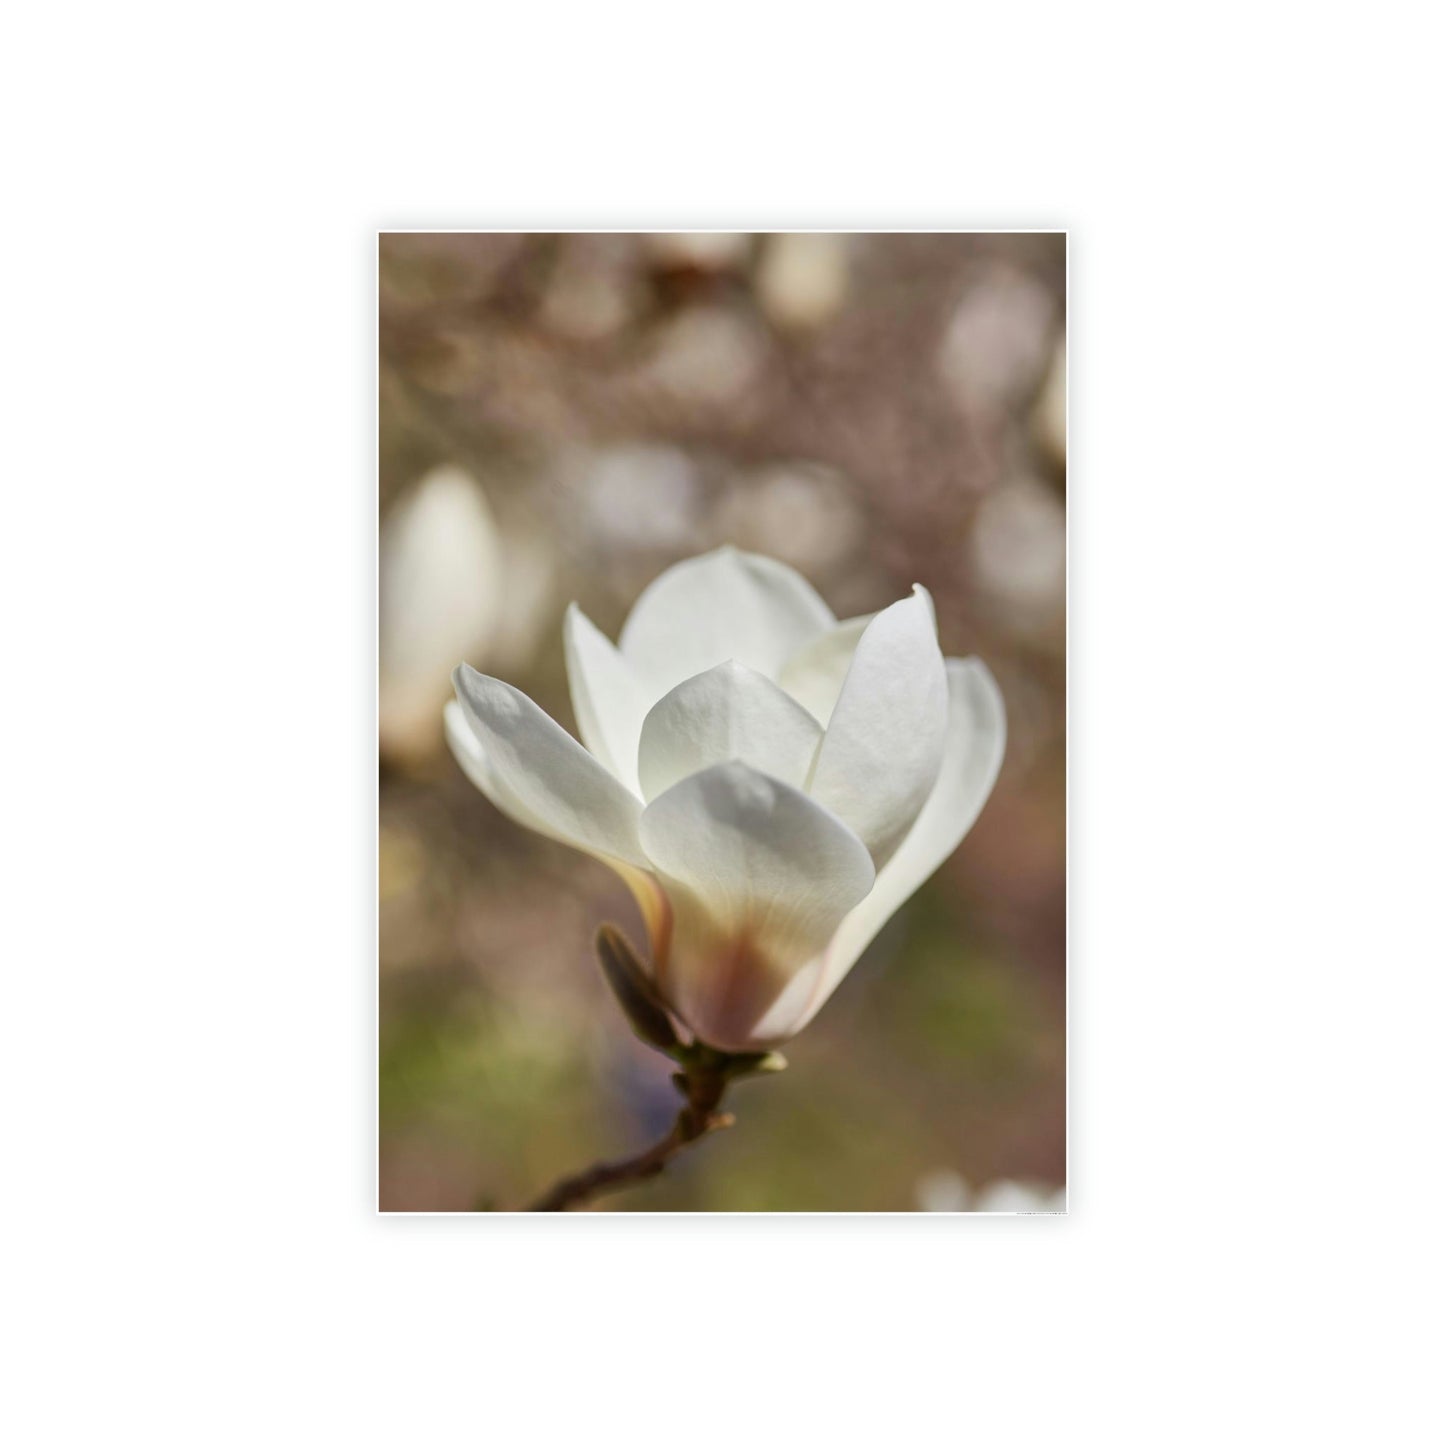 Magnolia Romance: A Garden of Love